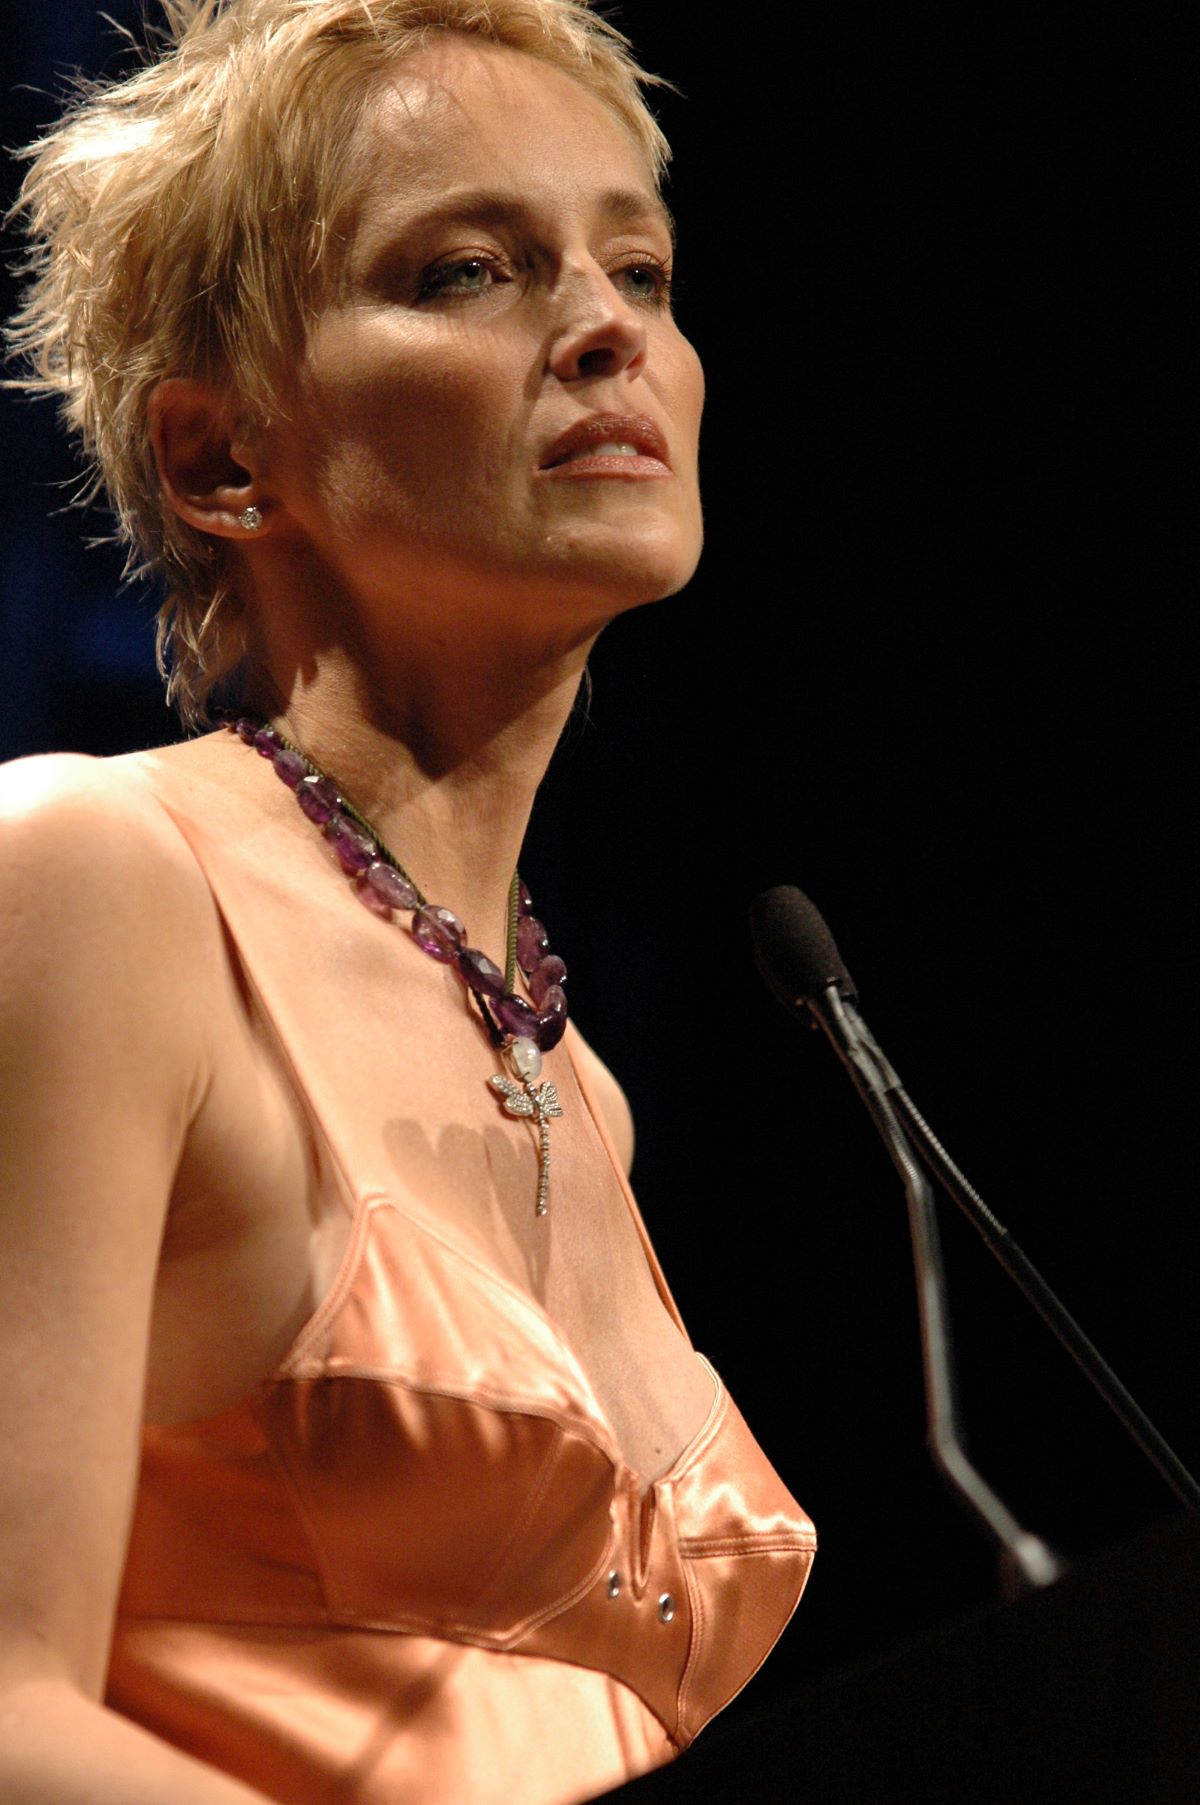 Sharon Stone, l'actrice internationale, déclare souffrir d'une grosse tumeur